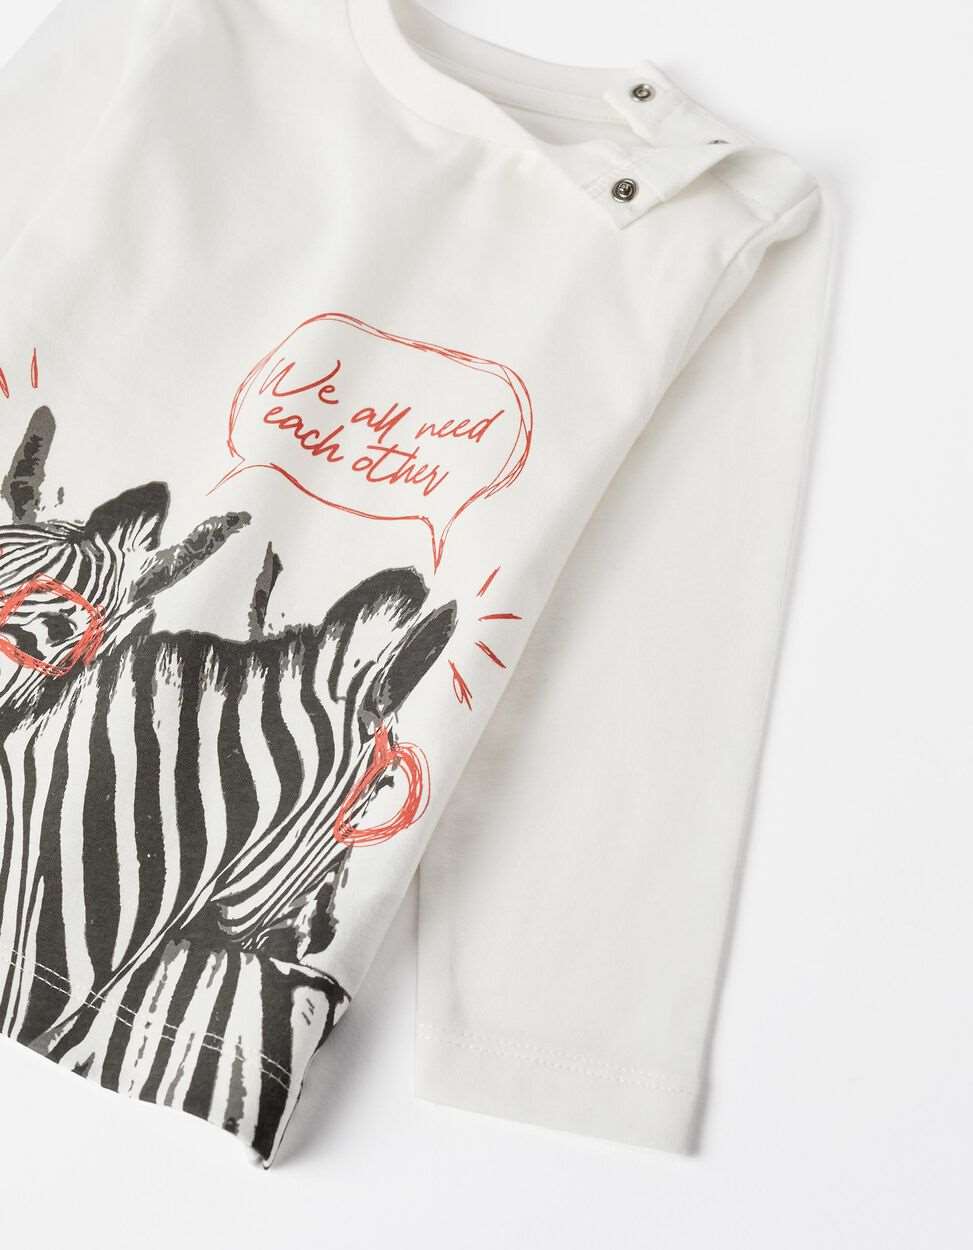 Camisola em algodão para bebé menino 'zebras divertidas' - Zippy